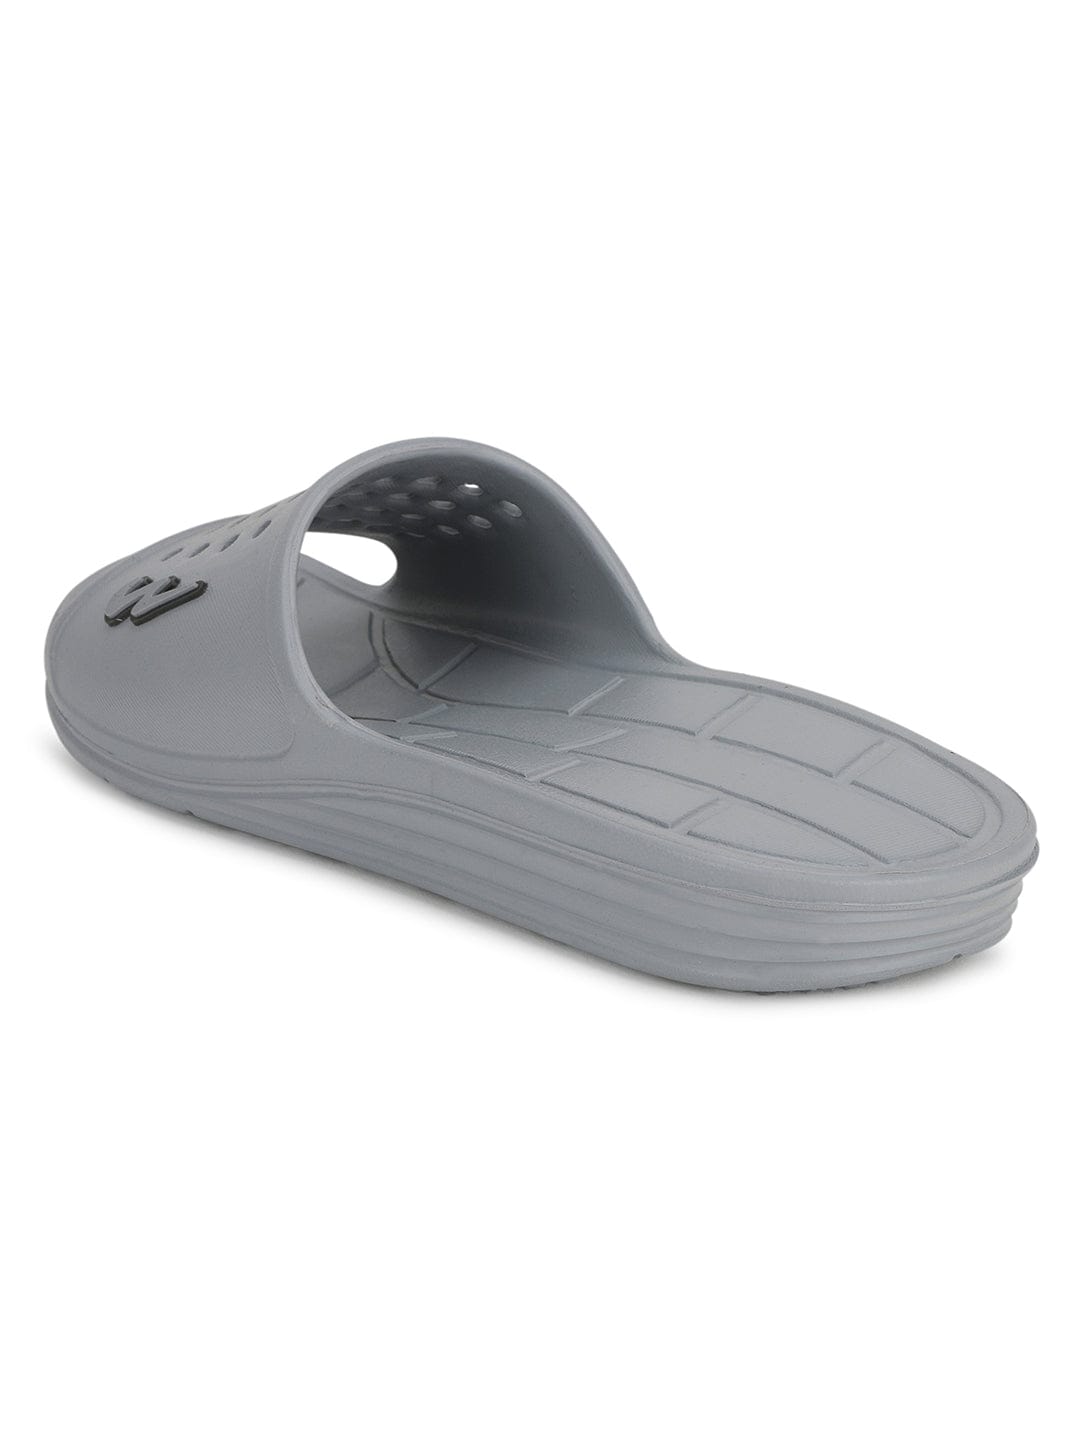 Buy Men Grey Flip Flops Online - 809764